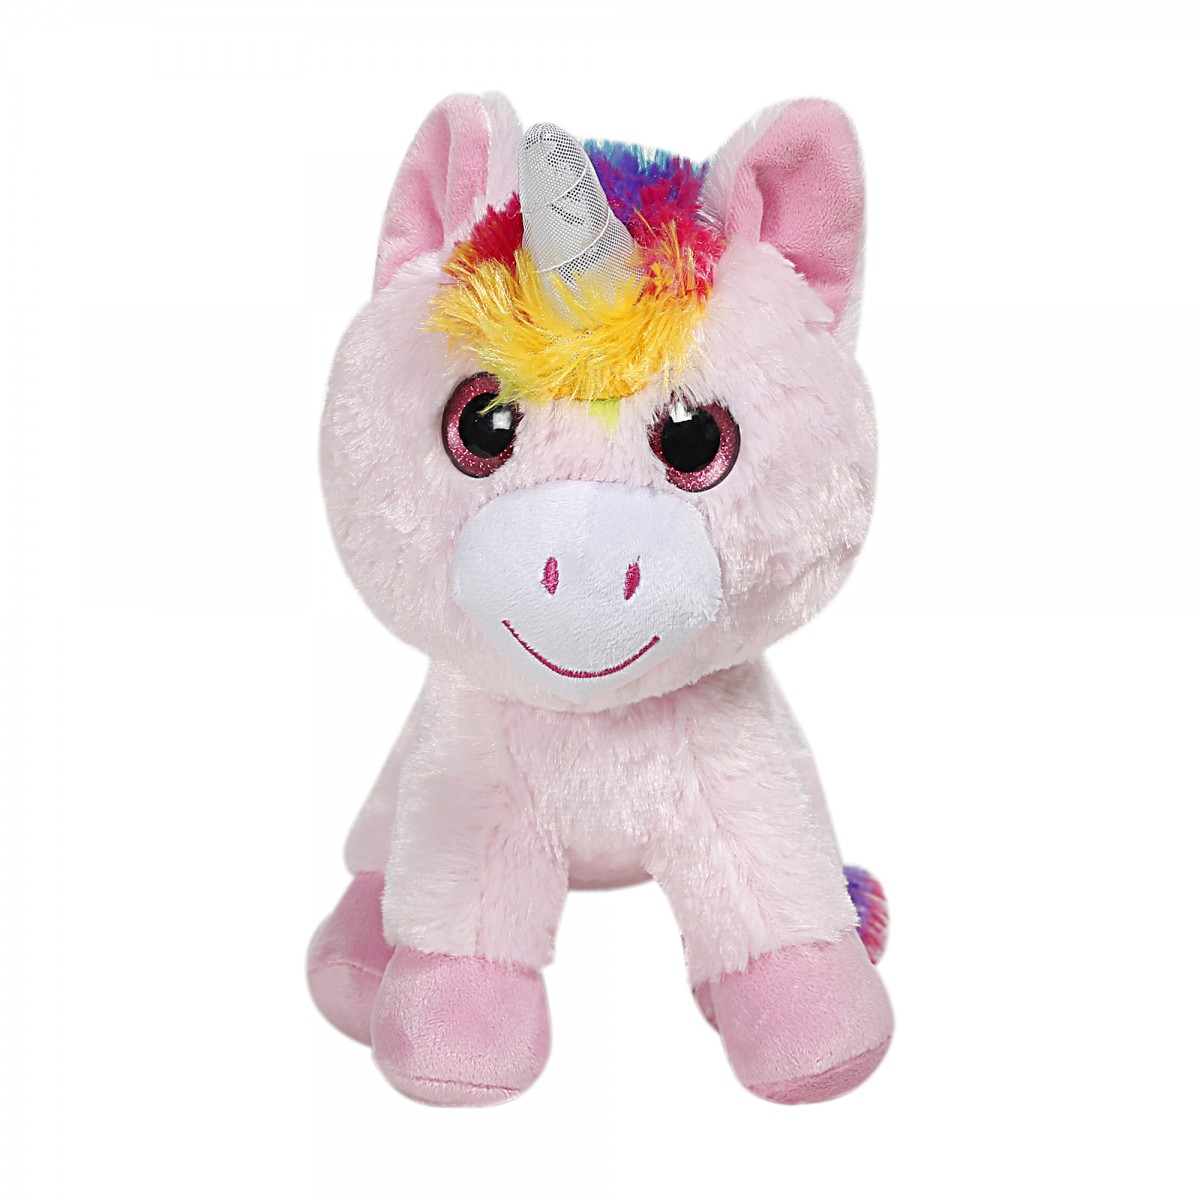 Fuzzbuzz Adorable Unicorn, Soft Toys for Kids, Pink, 0M+